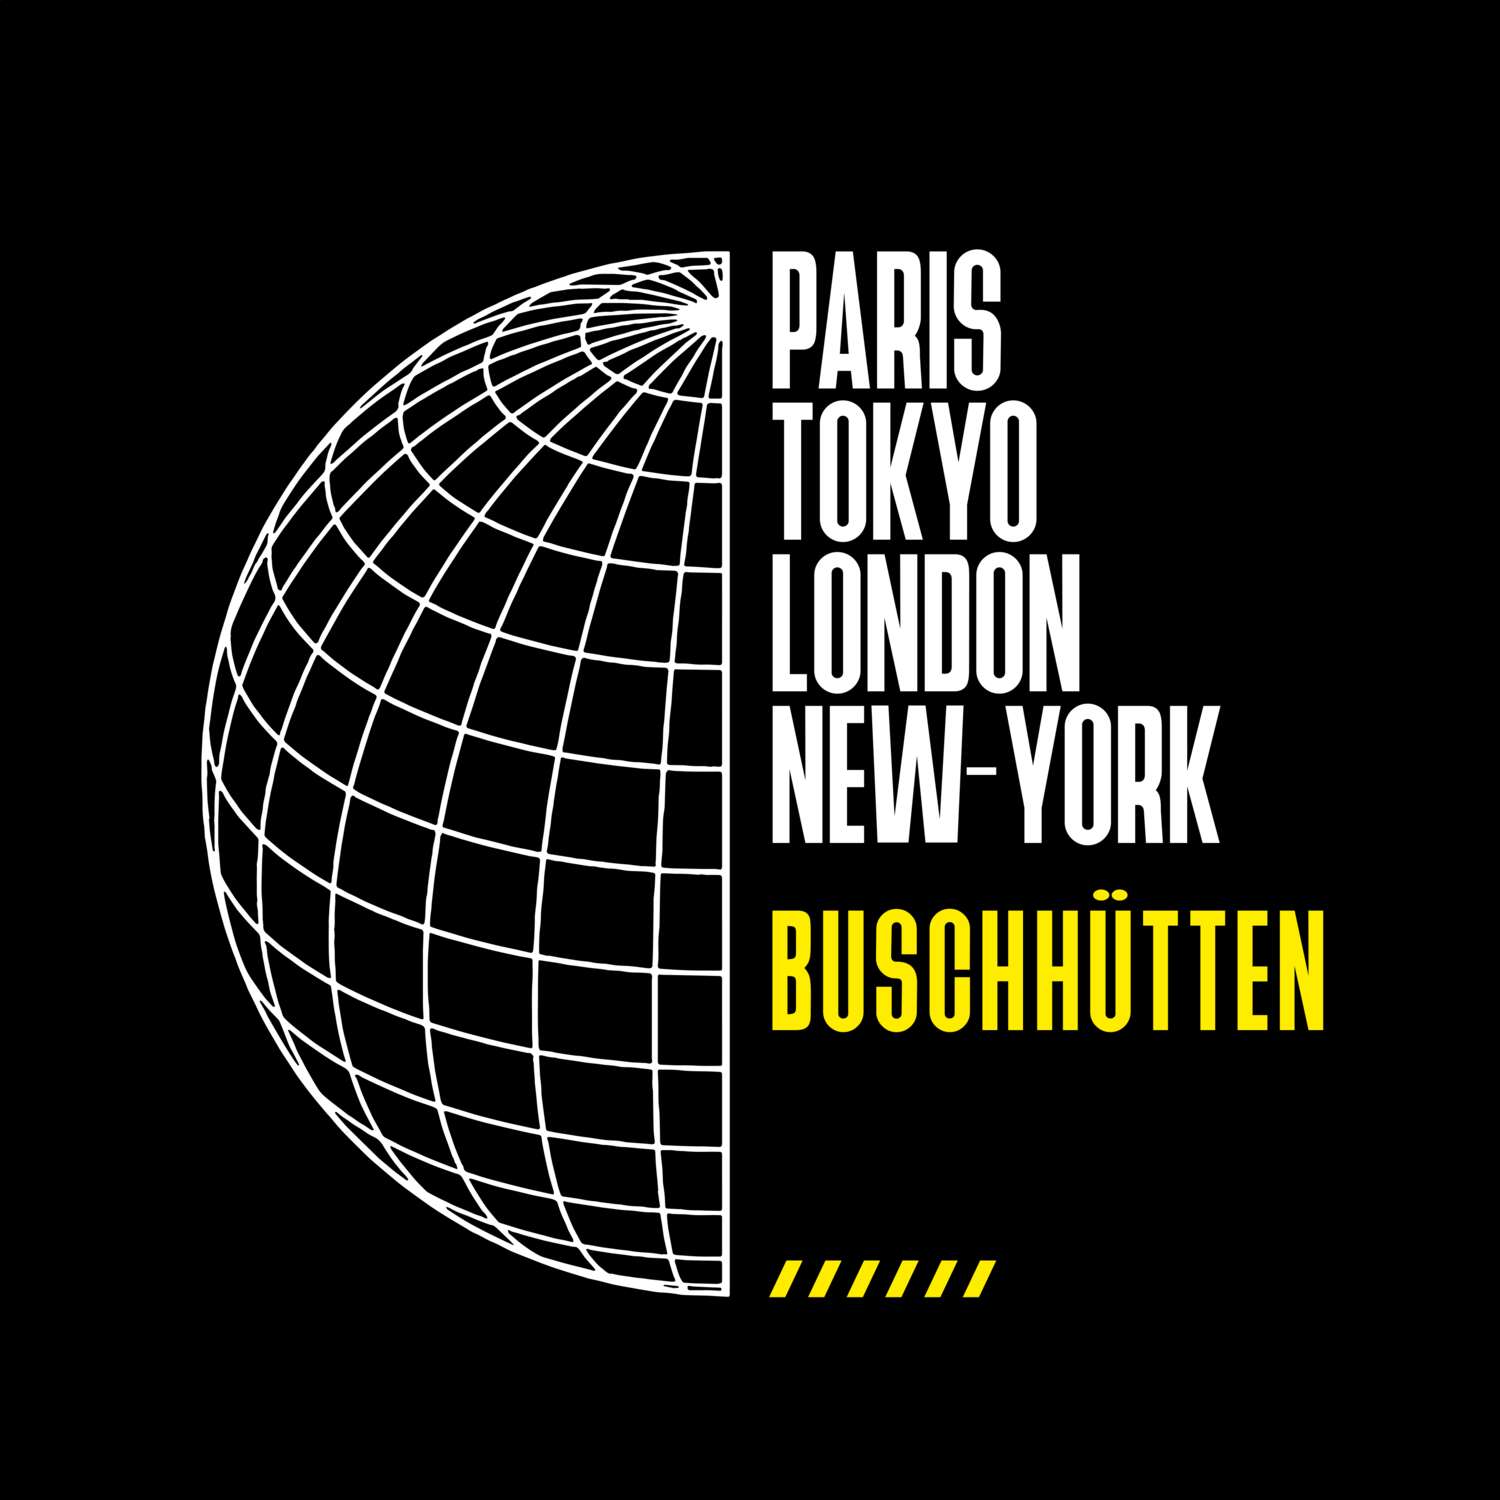 Buschhütten T-Shirt »Paris Tokyo London«